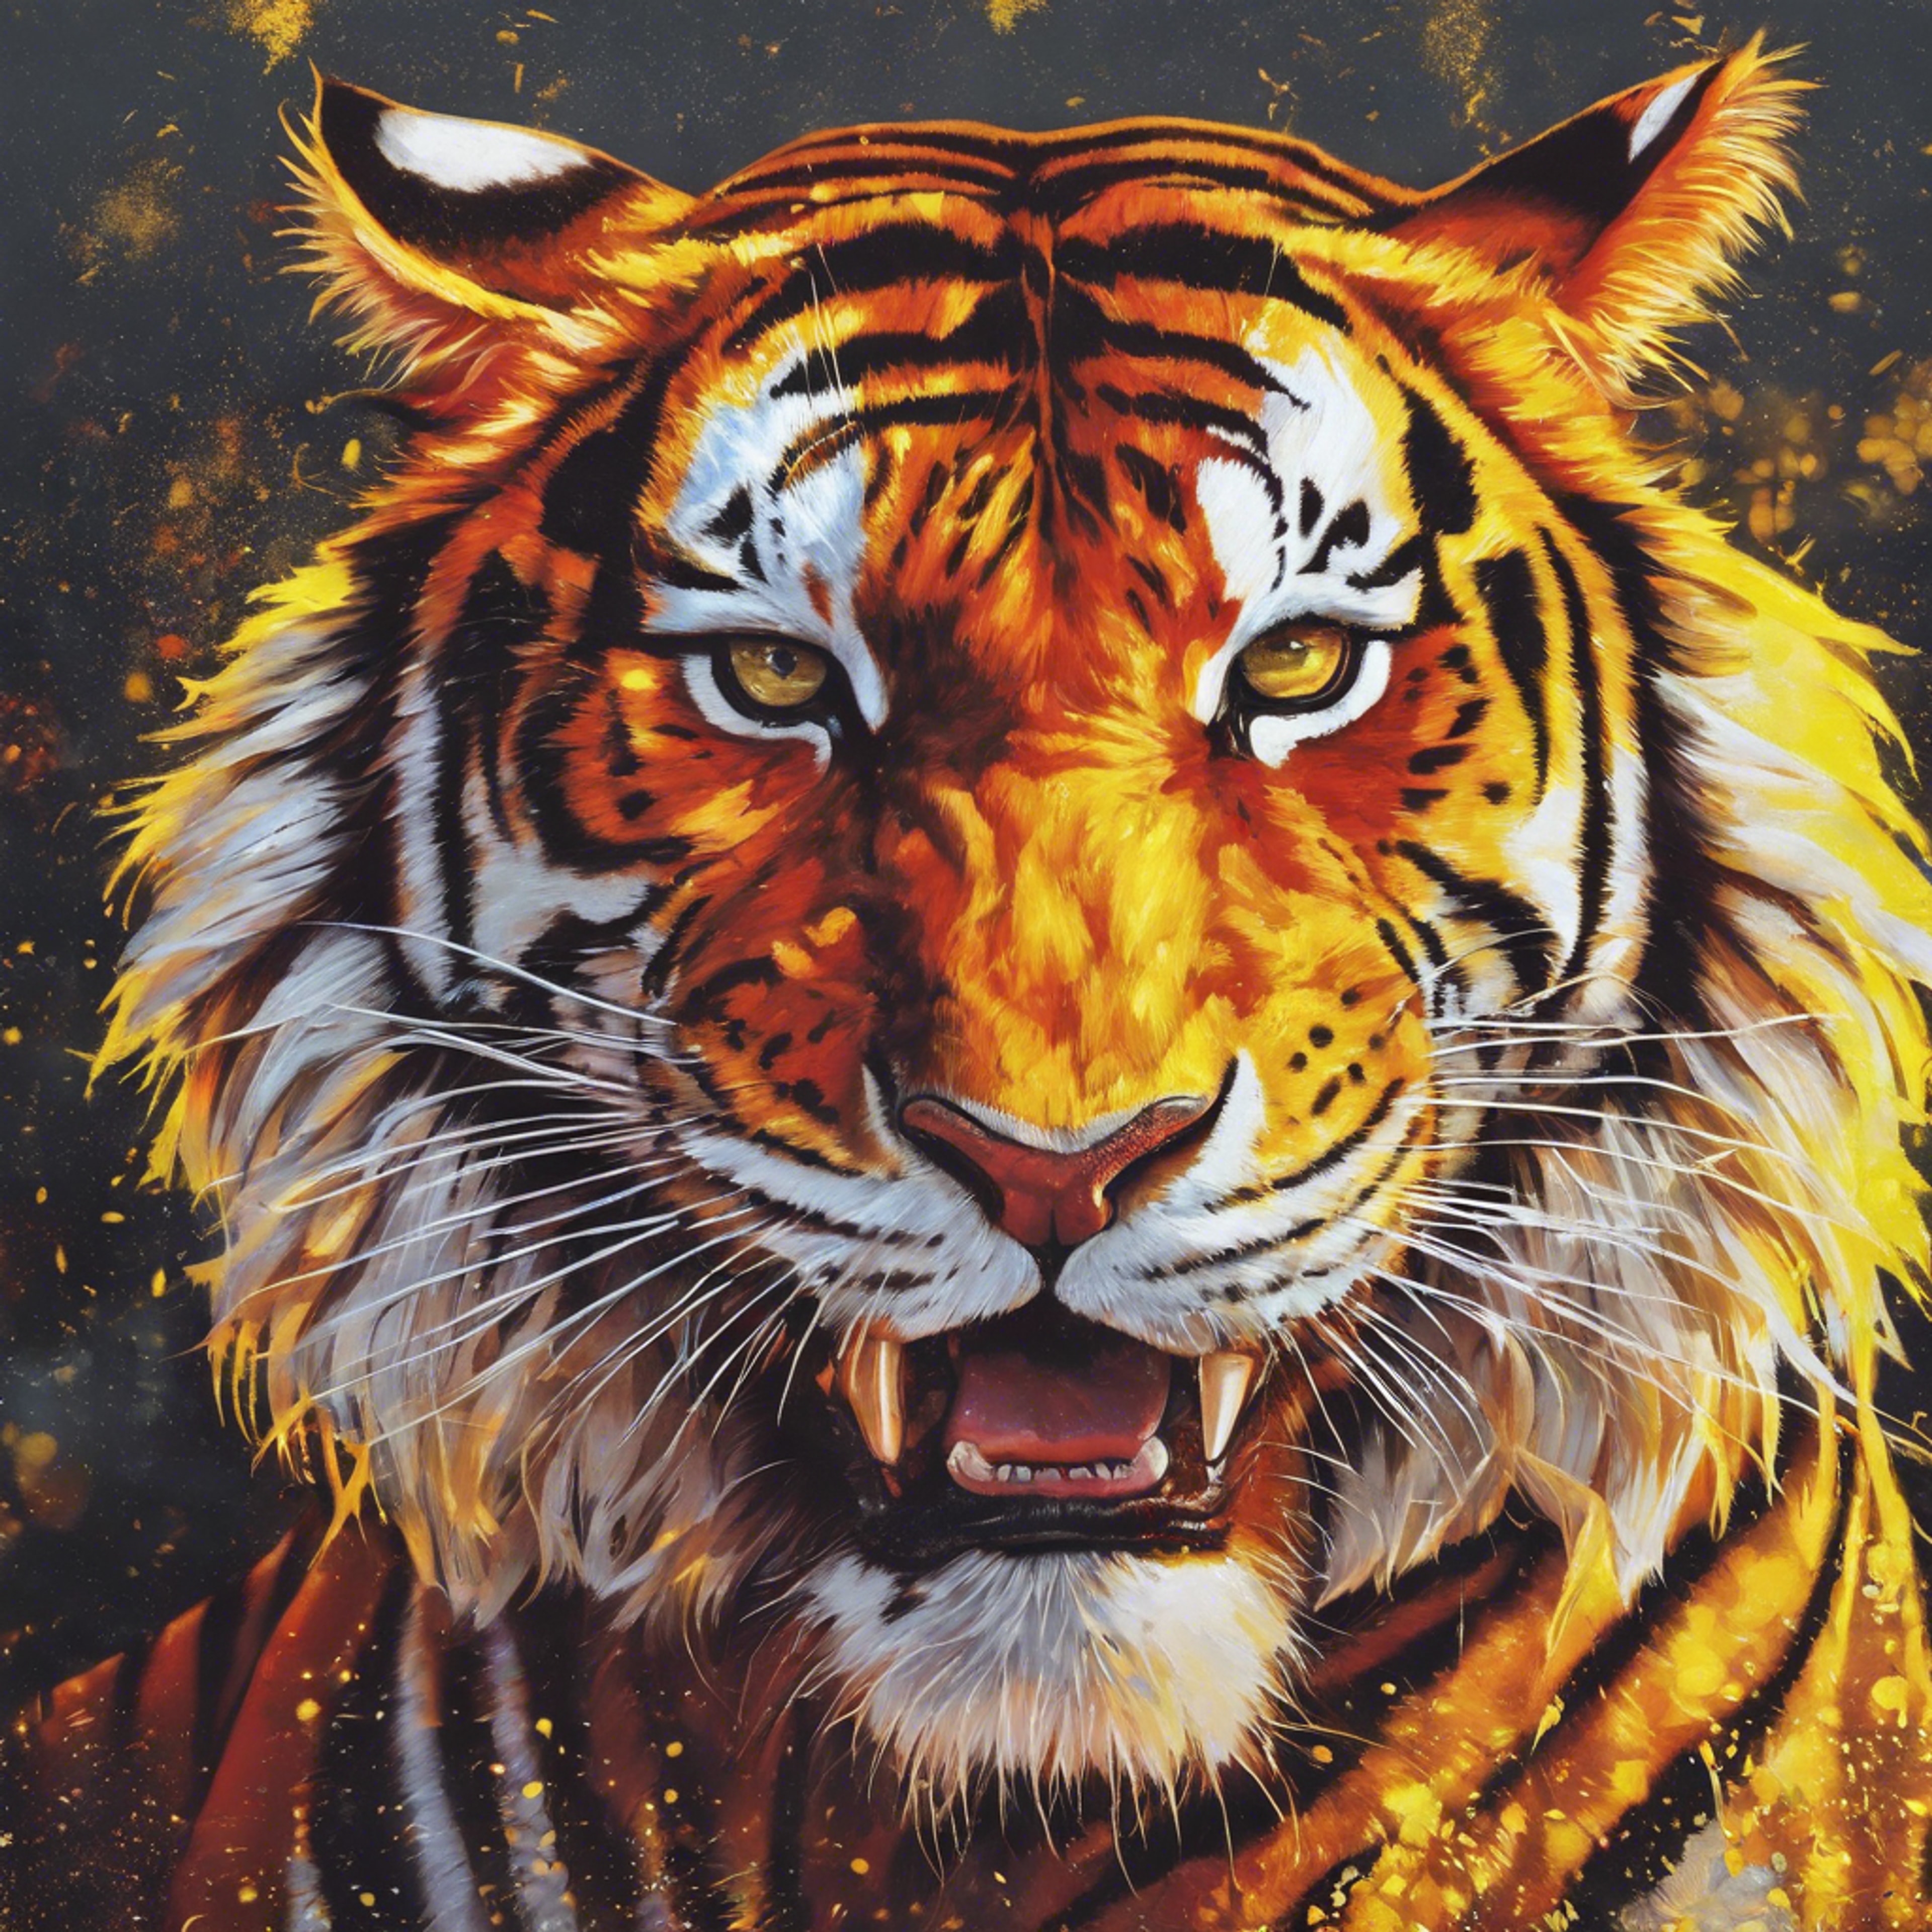 A mural featuring a cool red tiger roaring, under a bright yellow sun, symbolizing strength and energy. Divar kağızı[b92d4e06da1a4dd6b9b7]